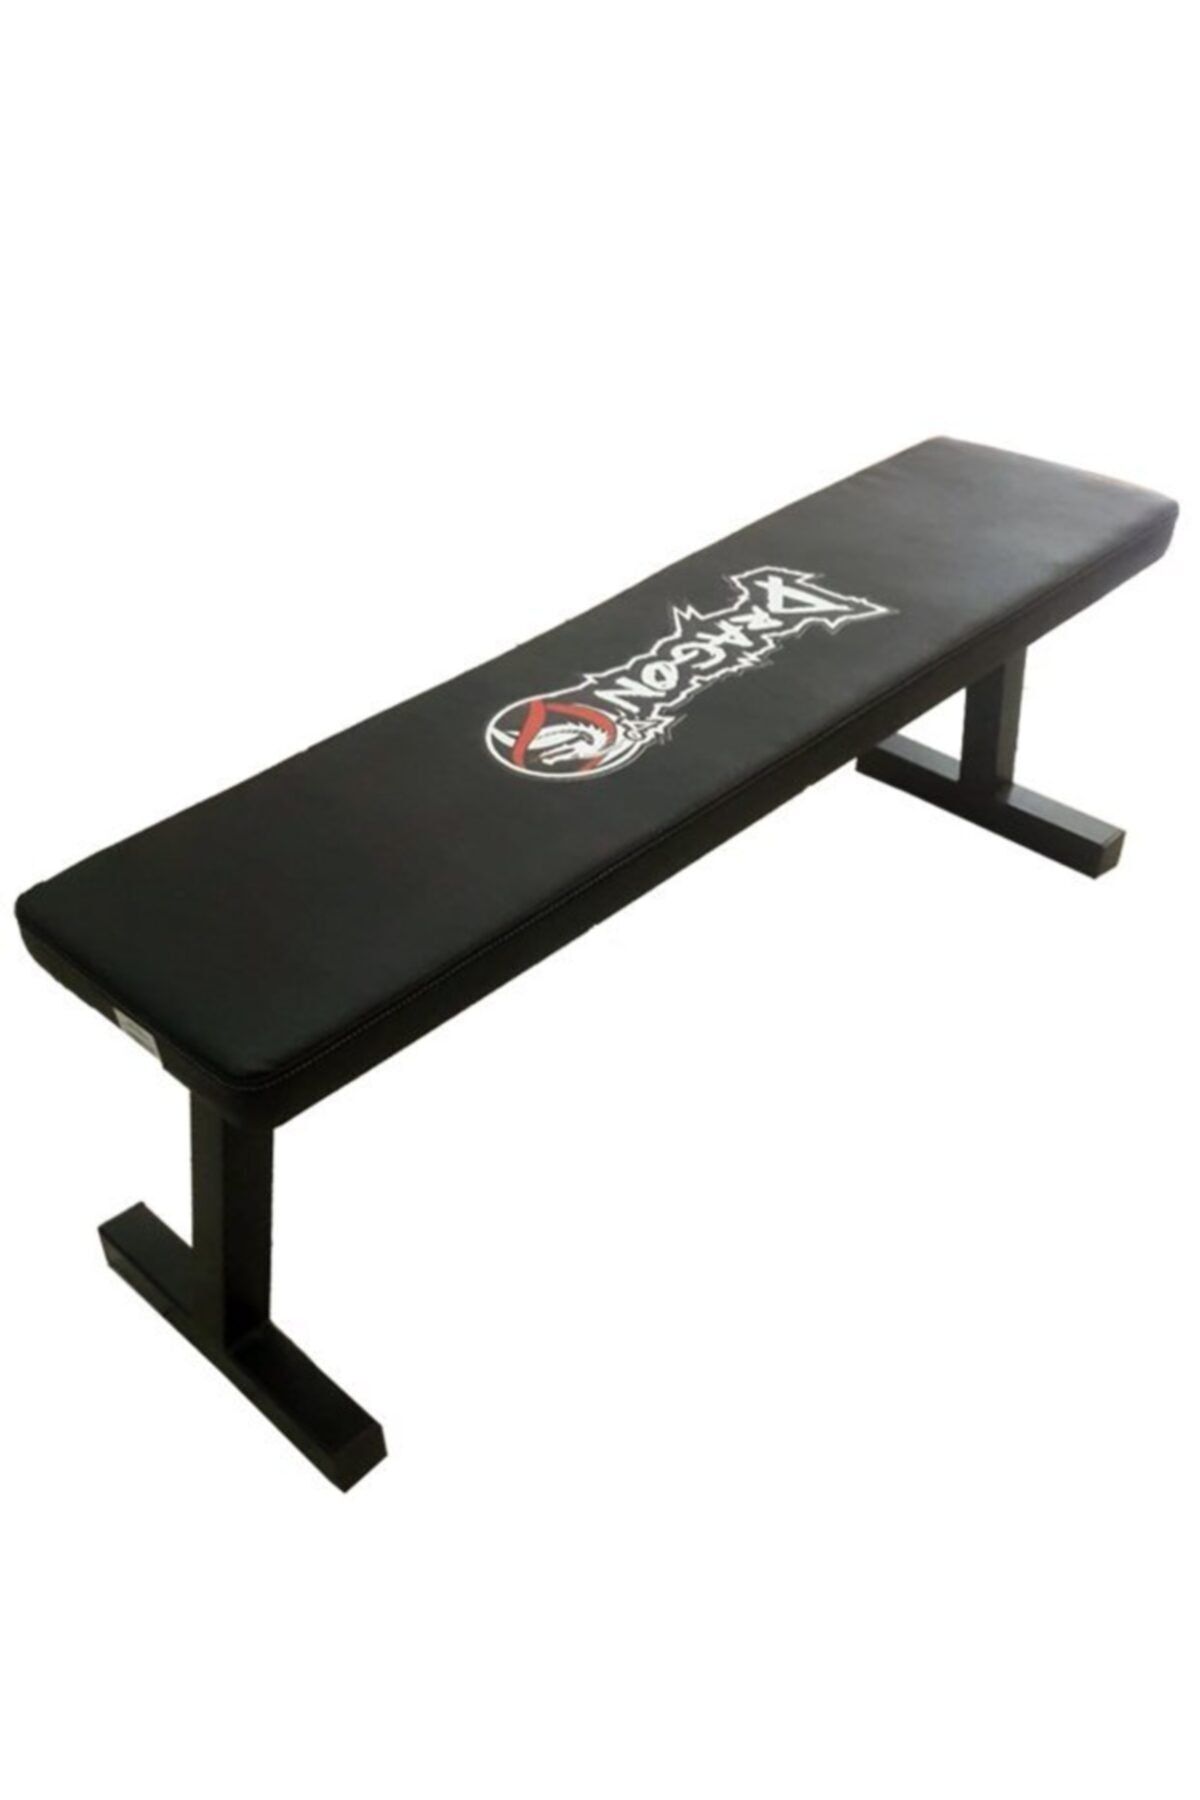 Dragondo Bench Sehpası, Mekik Ağırlık Sehpası Fitness Egzersiz Sehpası Bench Press